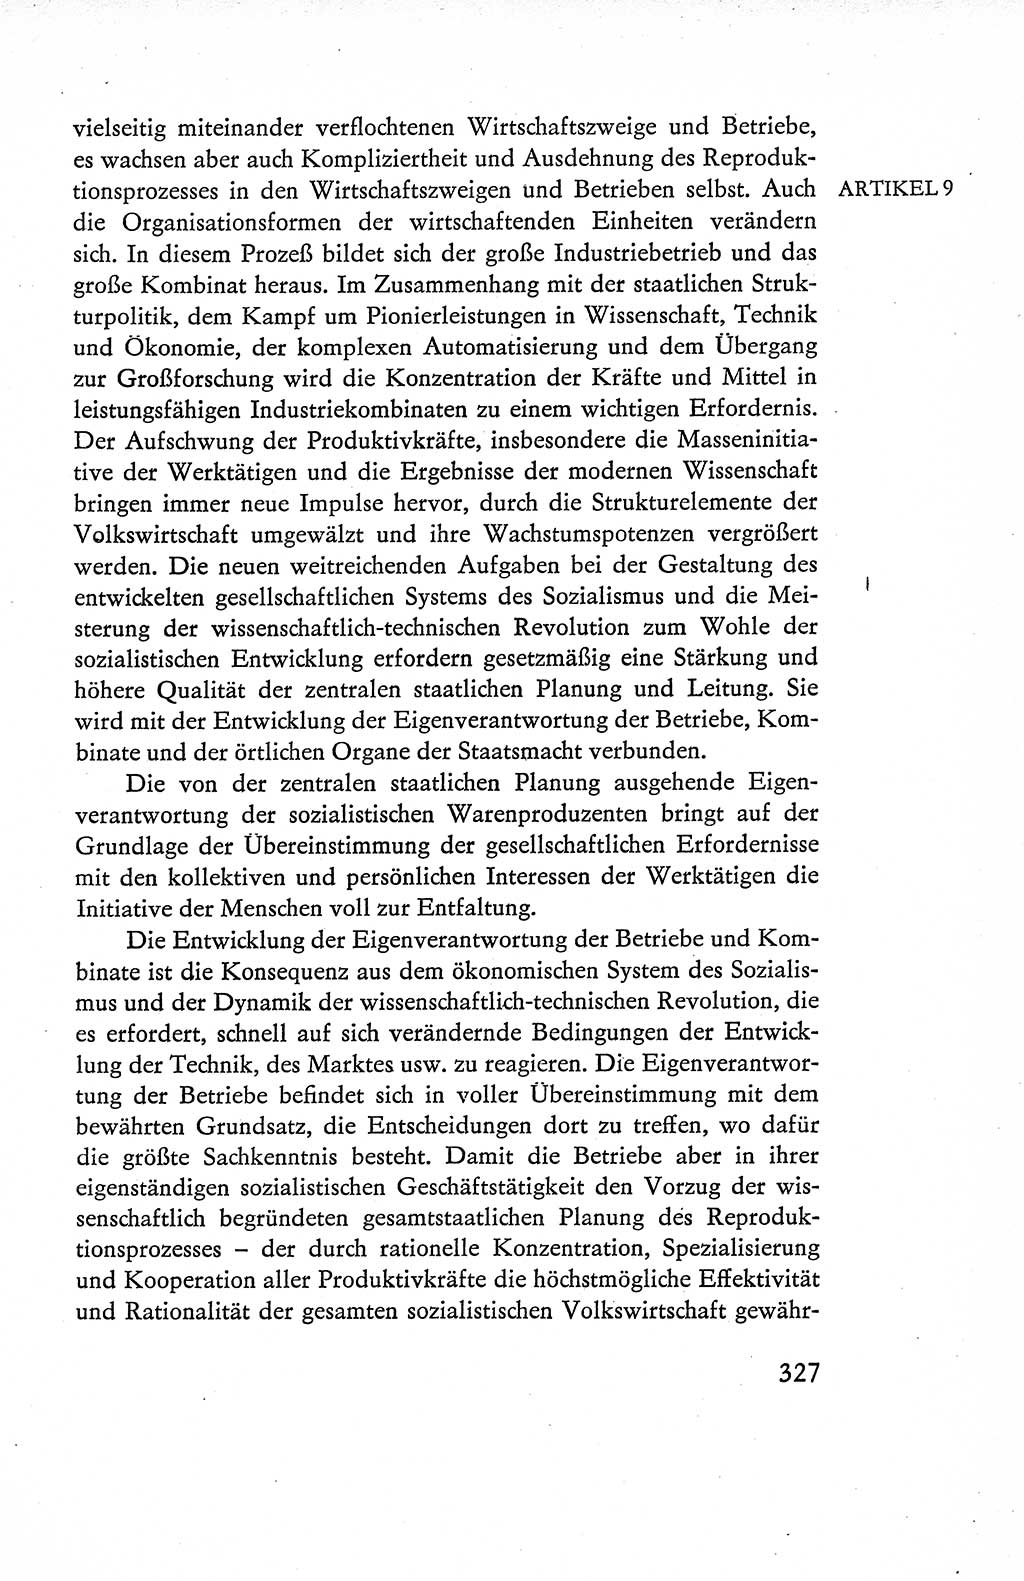 Verfassung der Deutschen Demokratischen Republik (DDR), Dokumente, Kommentar 1969, Band 1, Seite 327 (Verf. DDR Dok. Komm. 1969, Bd. 1, S. 327)